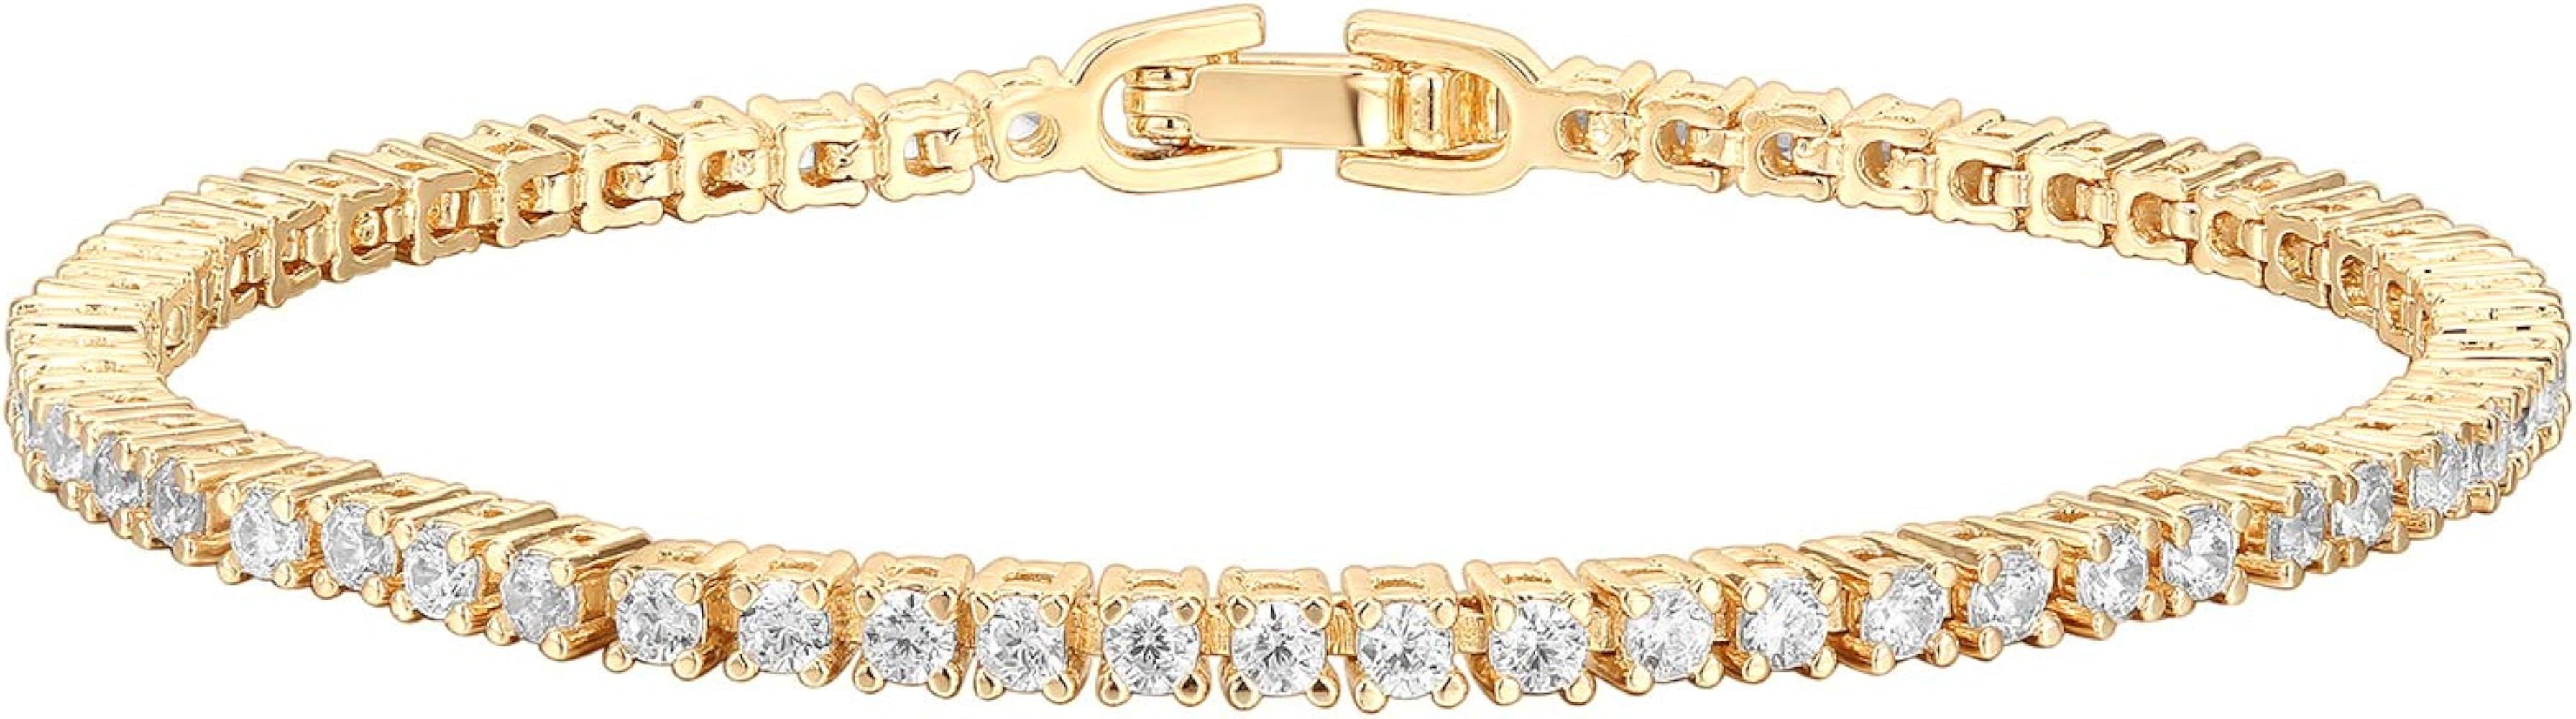 PAVOI 14K Gold Plated Cubic Zirconia Classic Tennis Bracelet | Gold Bracelets for Women | 4mm CZ,... | Amazon (US)